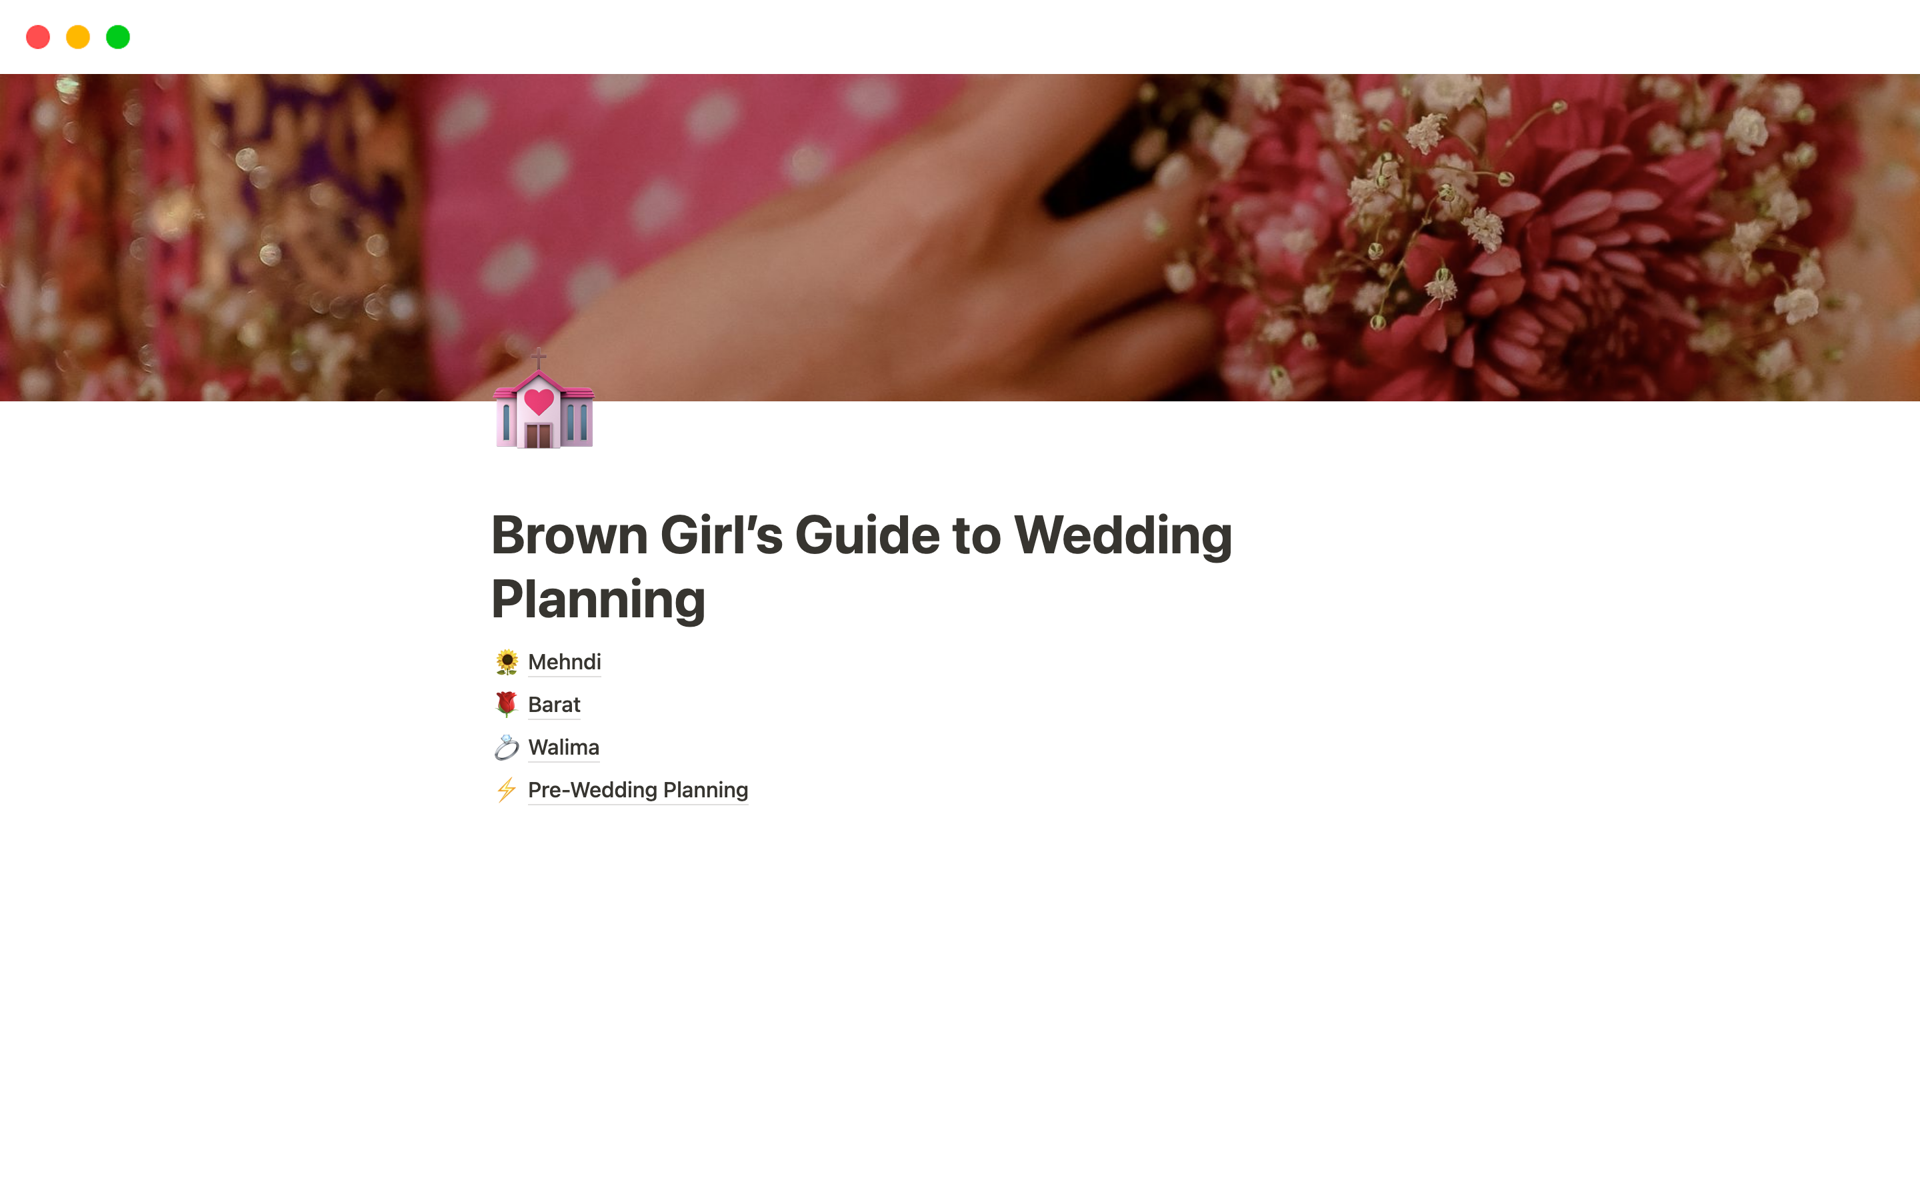 Uma prévia do modelo para Brown Girl’s Guide to Wedding Planning